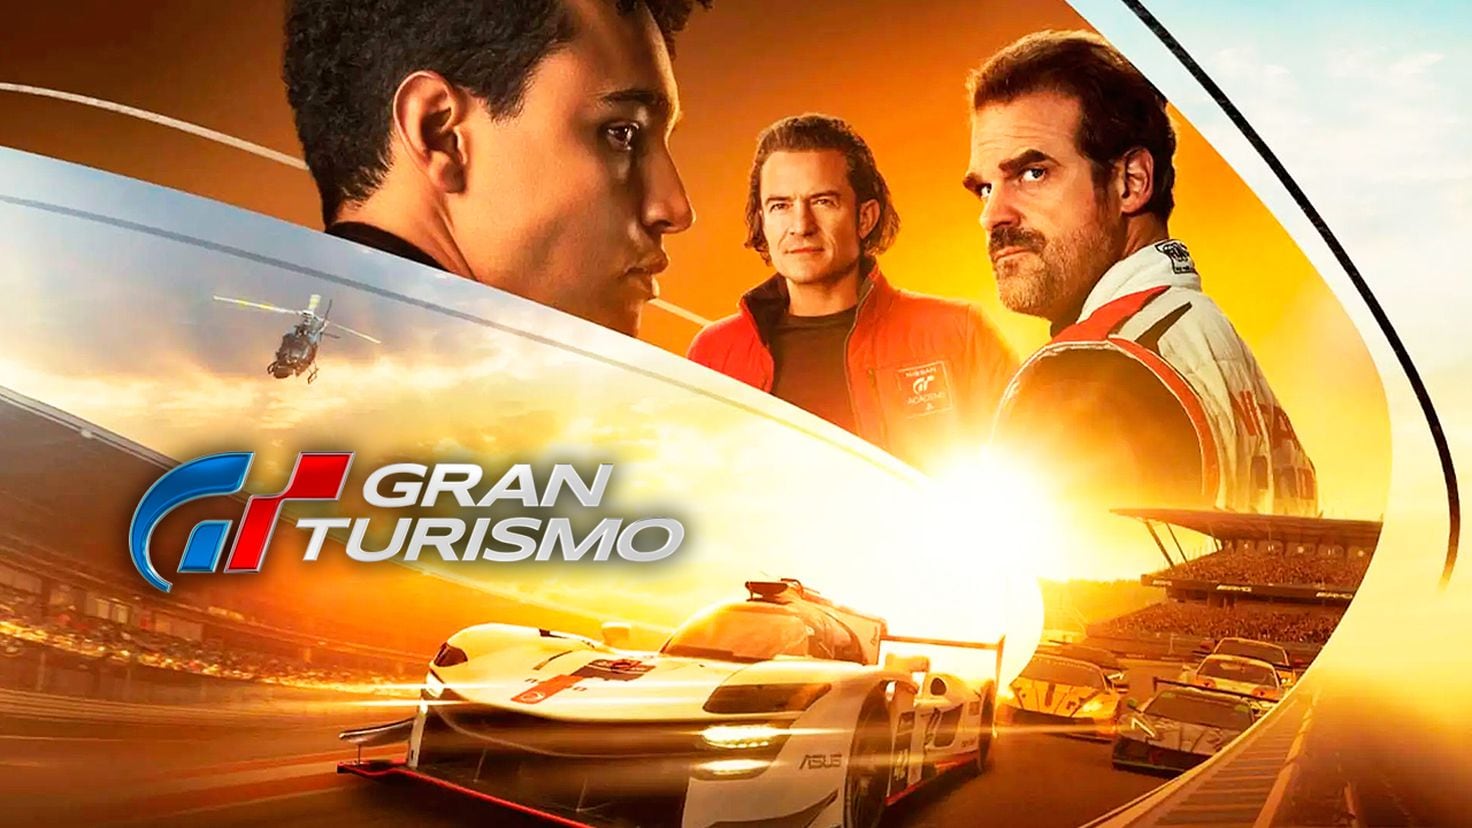 Gran Turismo', la película, es todo lo que esperábamos ver - Meristation